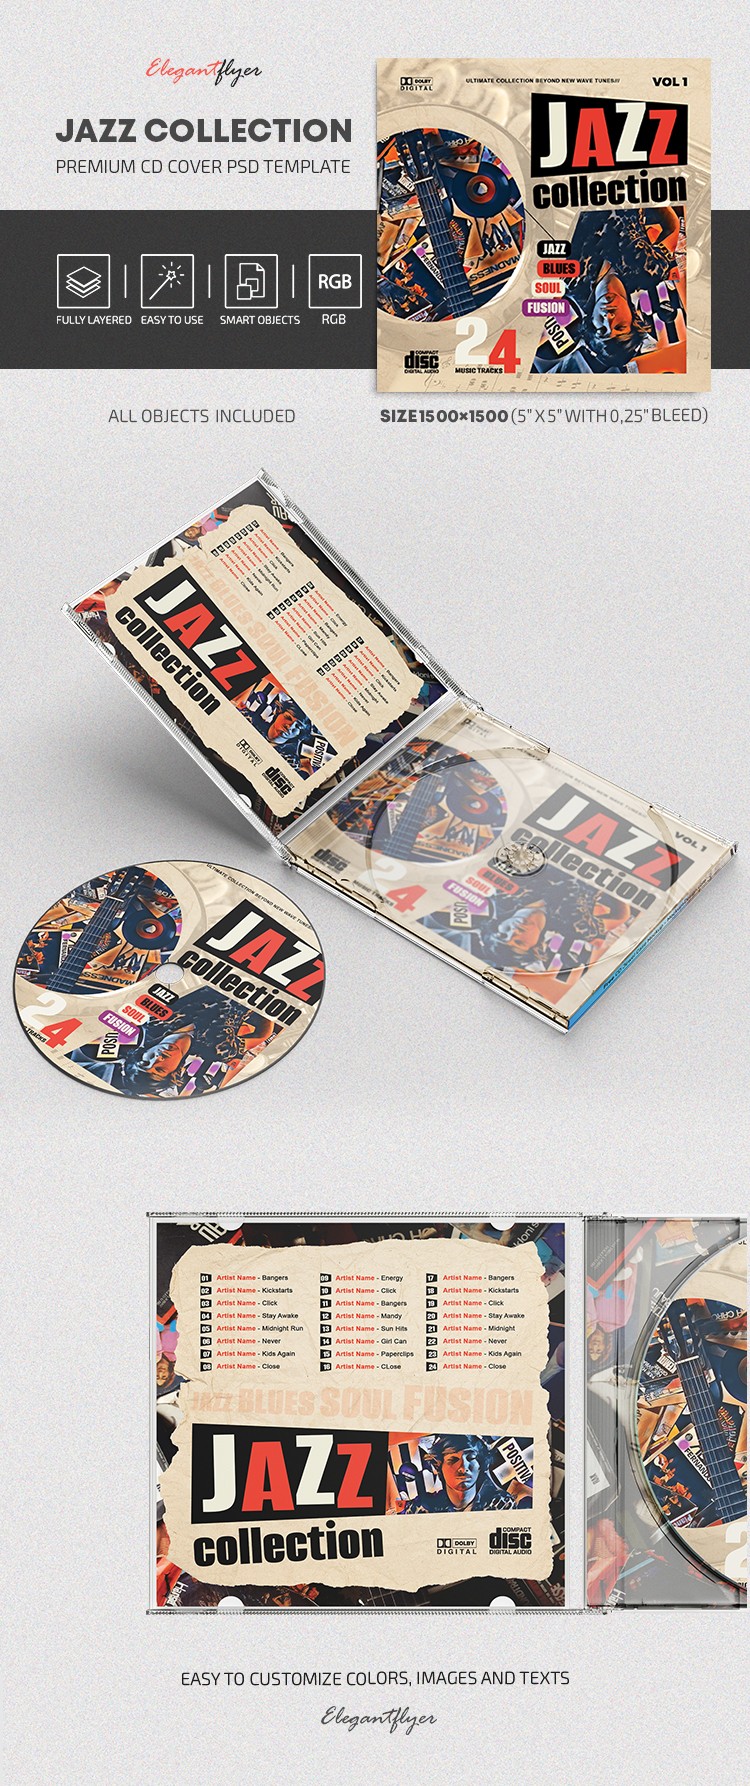 Couverture de CD de la Collection Jazz by ElegantFlyer